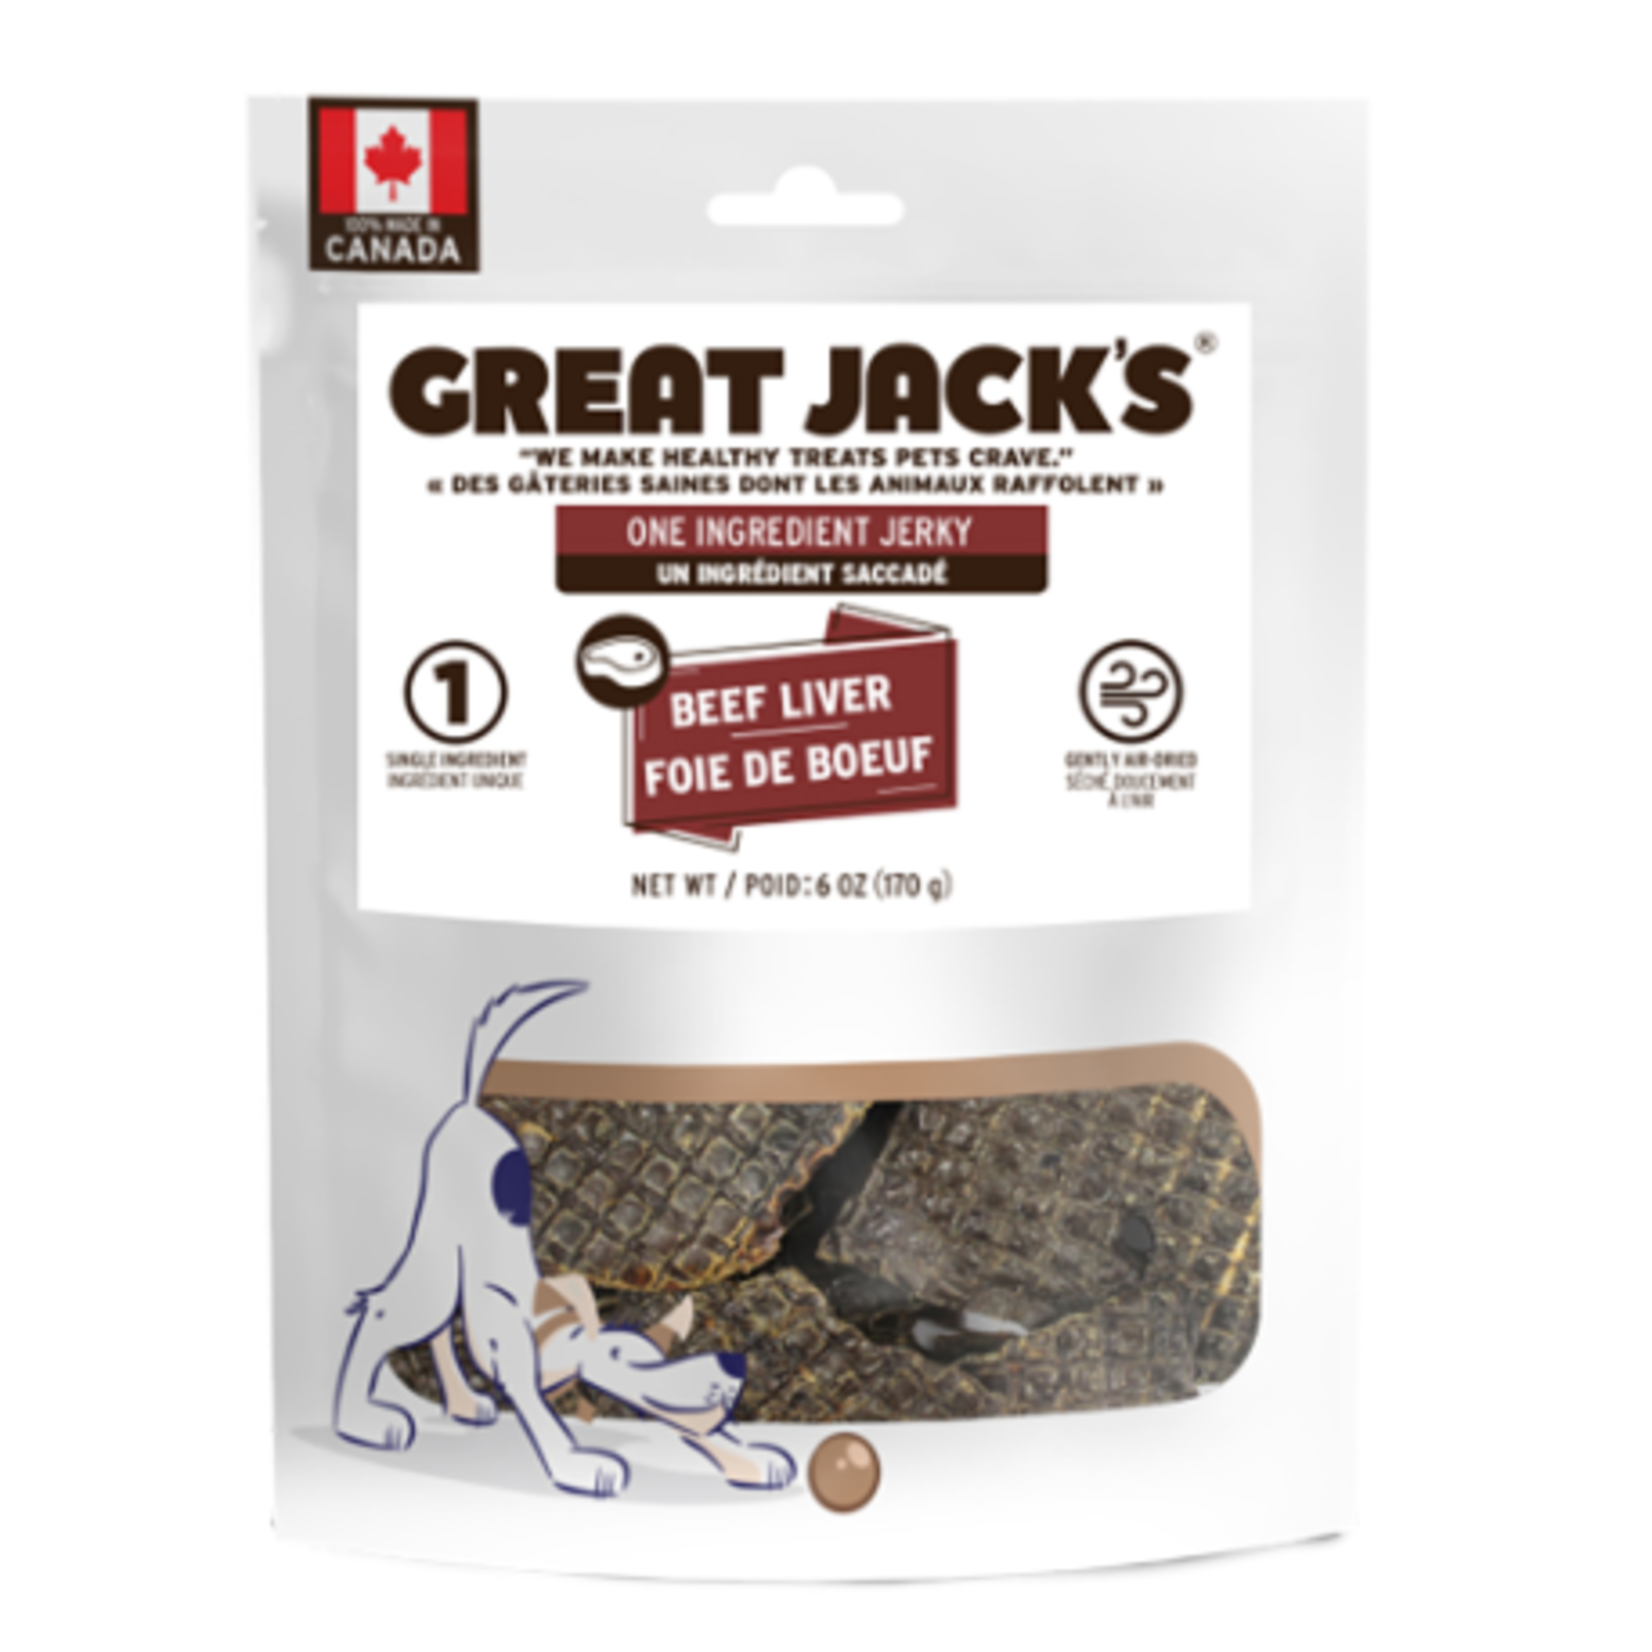 Canadian Jerky Company Great Jack's - Un ingrédient séché - Foie de boeuf - 6 oz